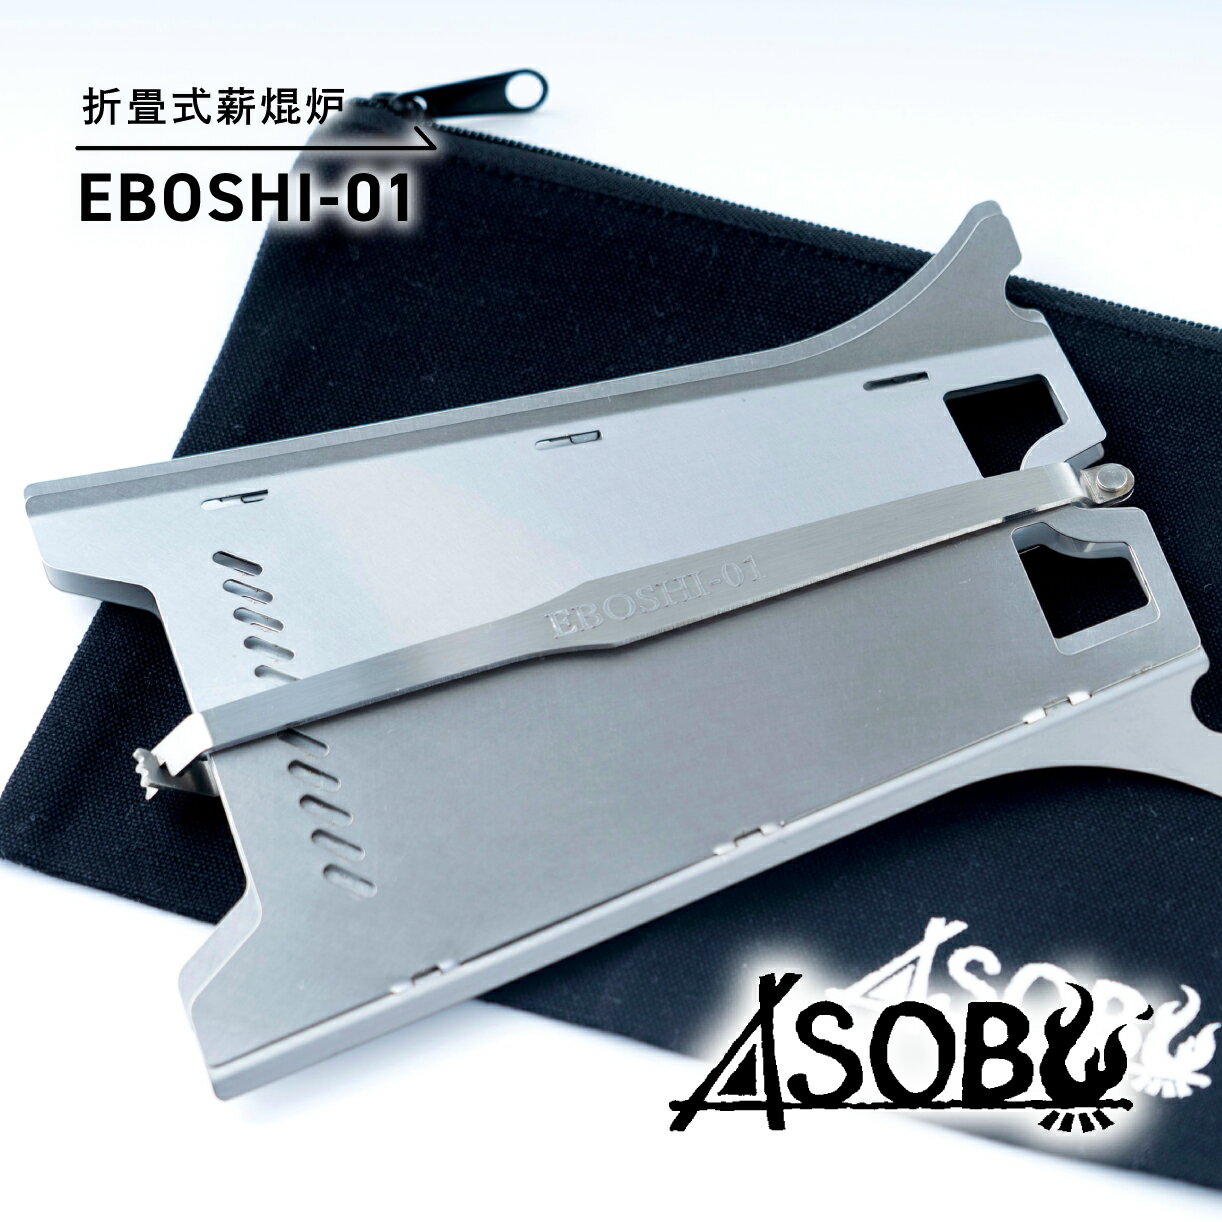 【ふるさと納税】 折畳式薪焜炉『EBOSHI-01』折りたた